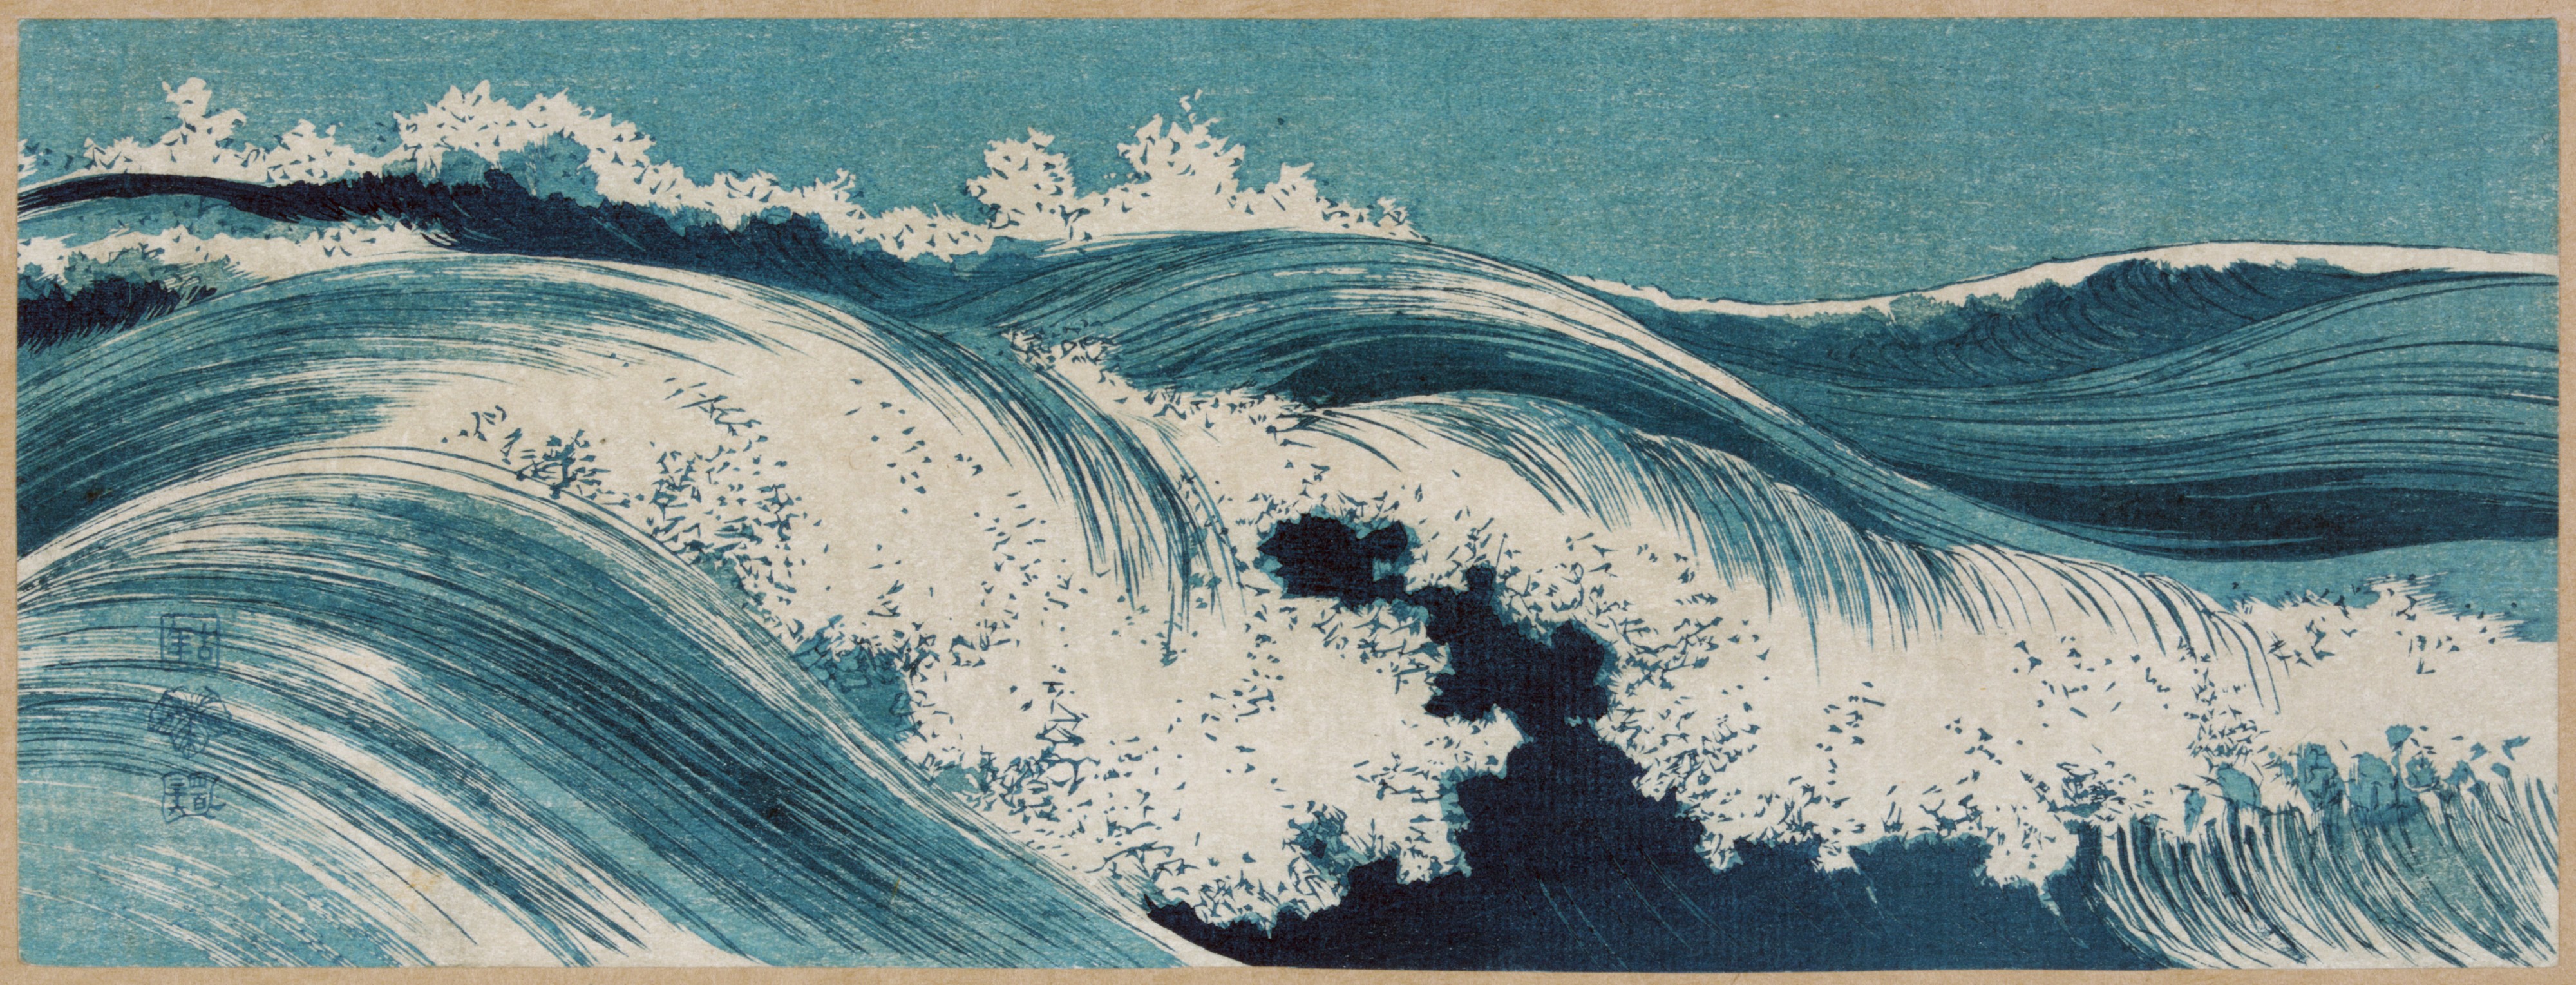 Flickr - …trialsanderrors - Konen Uehara, Waves, ca. 1910